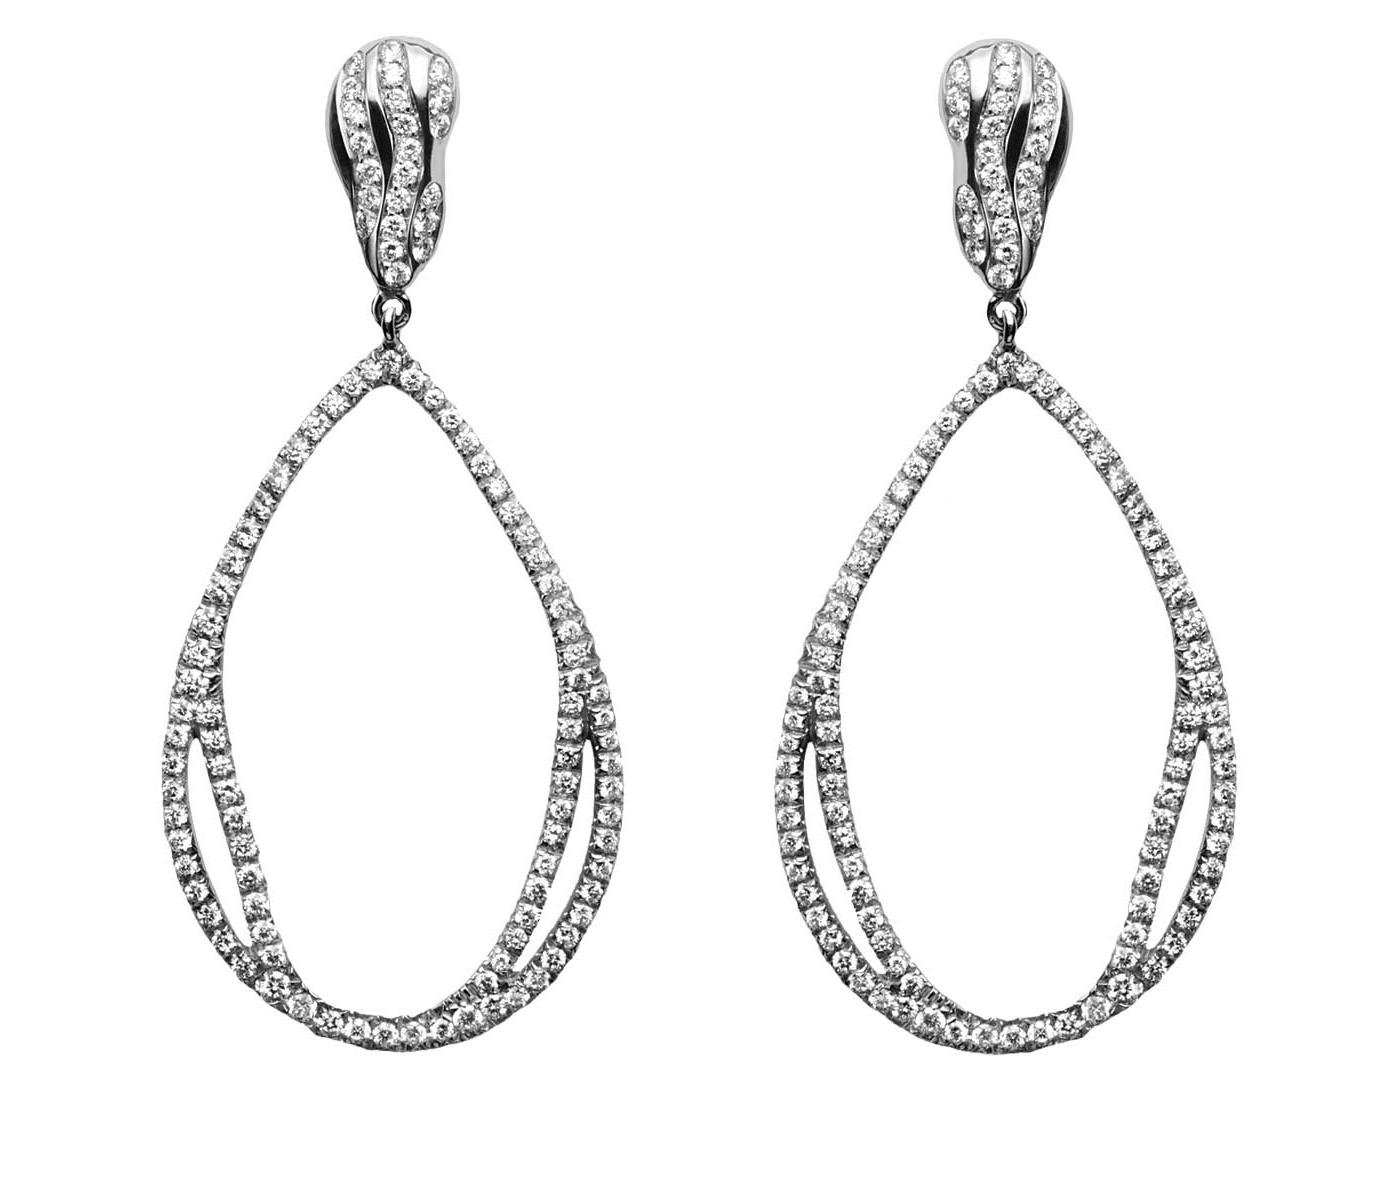 Earrings by Antonini